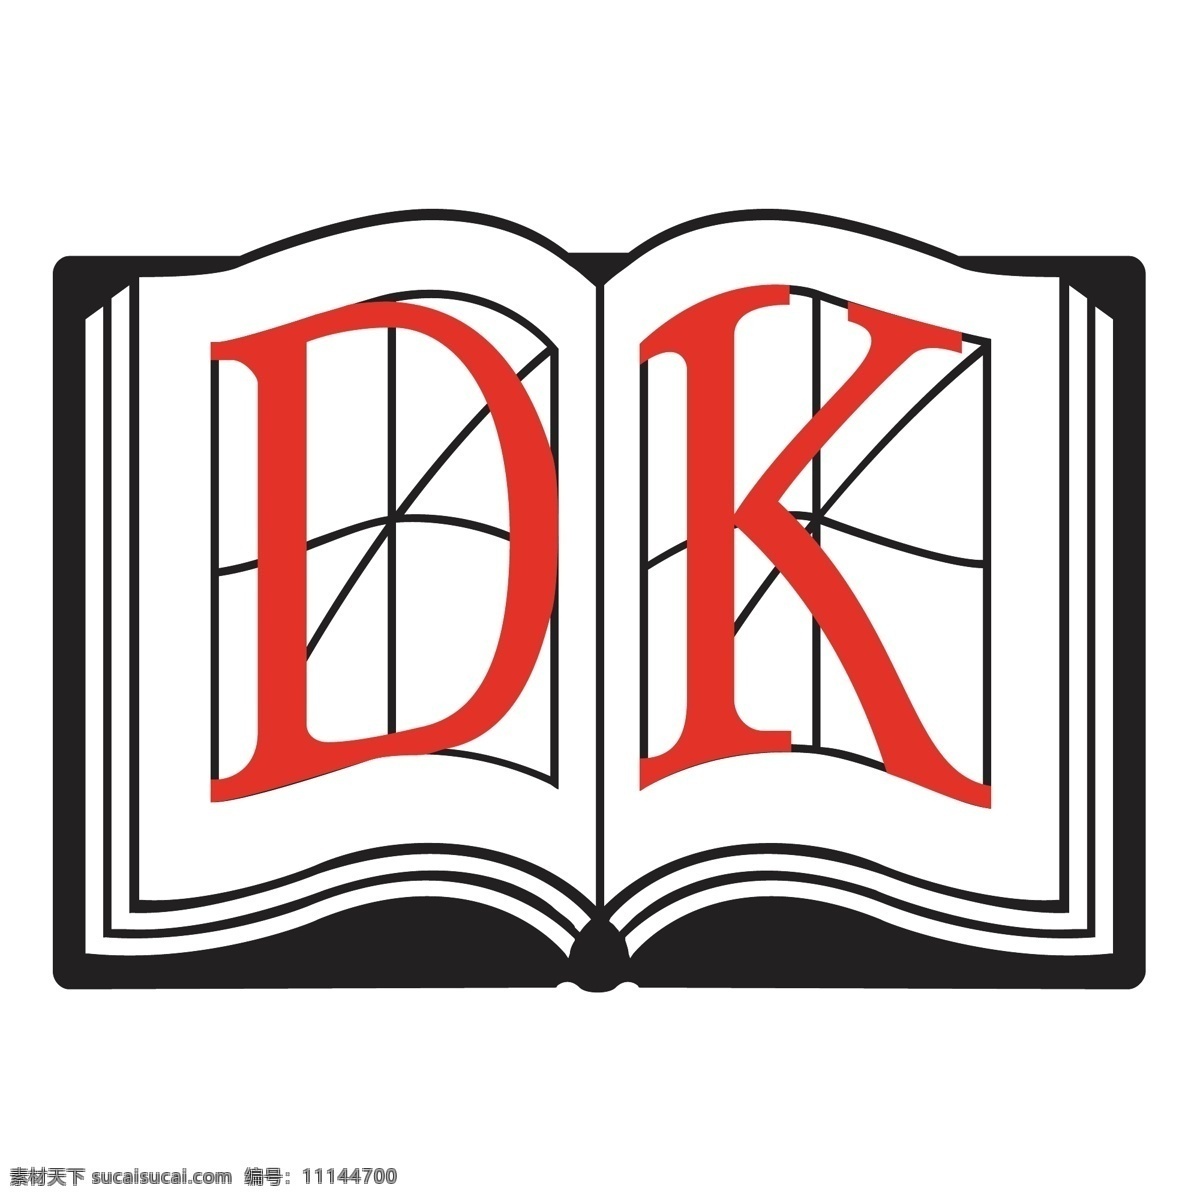 图形设计 dk的标志 矢量标志dk 矢量 dk 标志 标志的dk dk自由 标志eps dk矢量 自由的dk 矢量dk dk的设计 标志dk 旭通广告 logo dk向量 向量dk vestdjursnet 矢量图 建筑家居